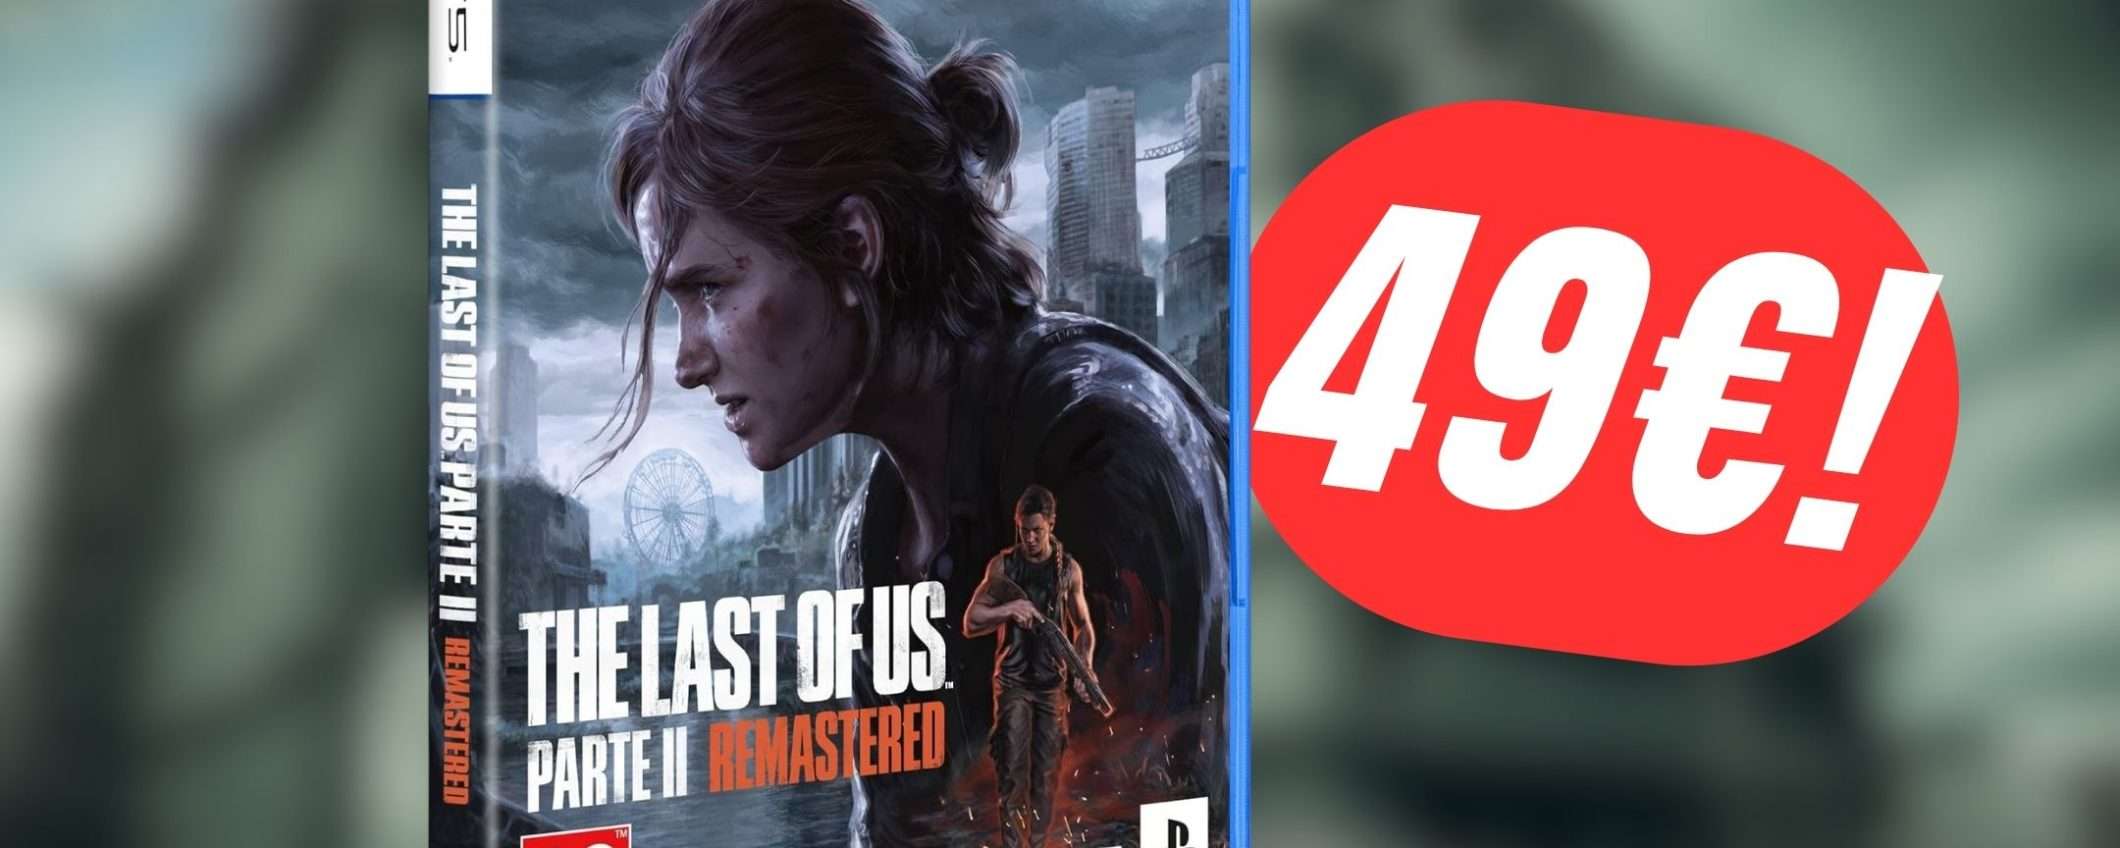 The Last of Us Parte II Remastered è ACQUISTABILE su Amazon!